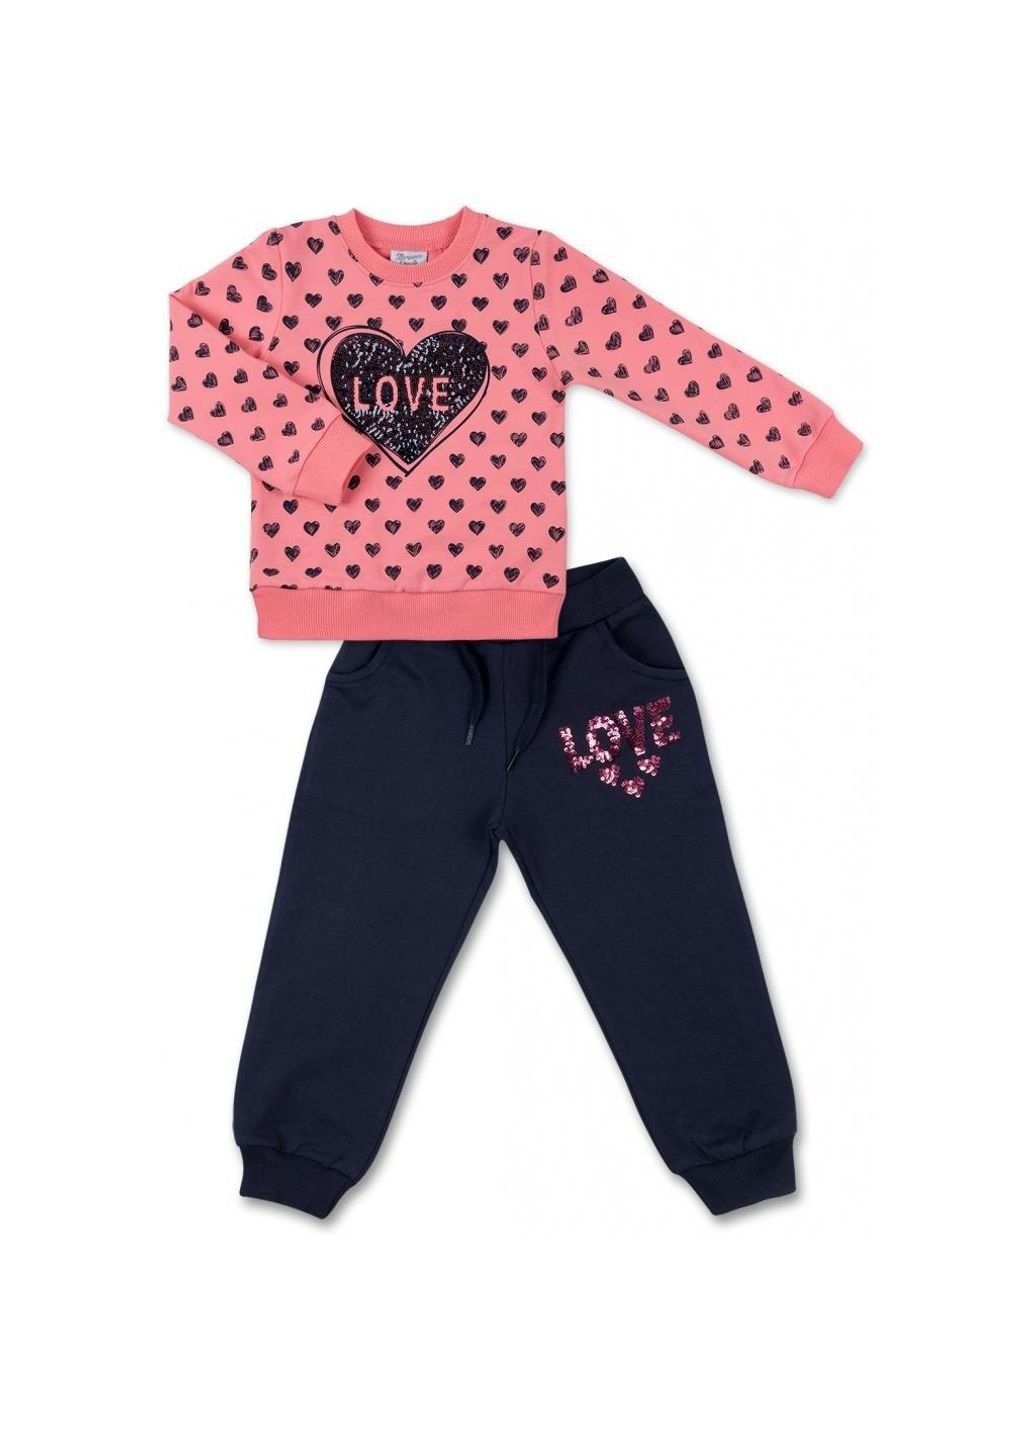 Коралловый демисезонный костюм десткий кофта с брюками с сердечком из пайеток (8271-98g-pink) Breeze